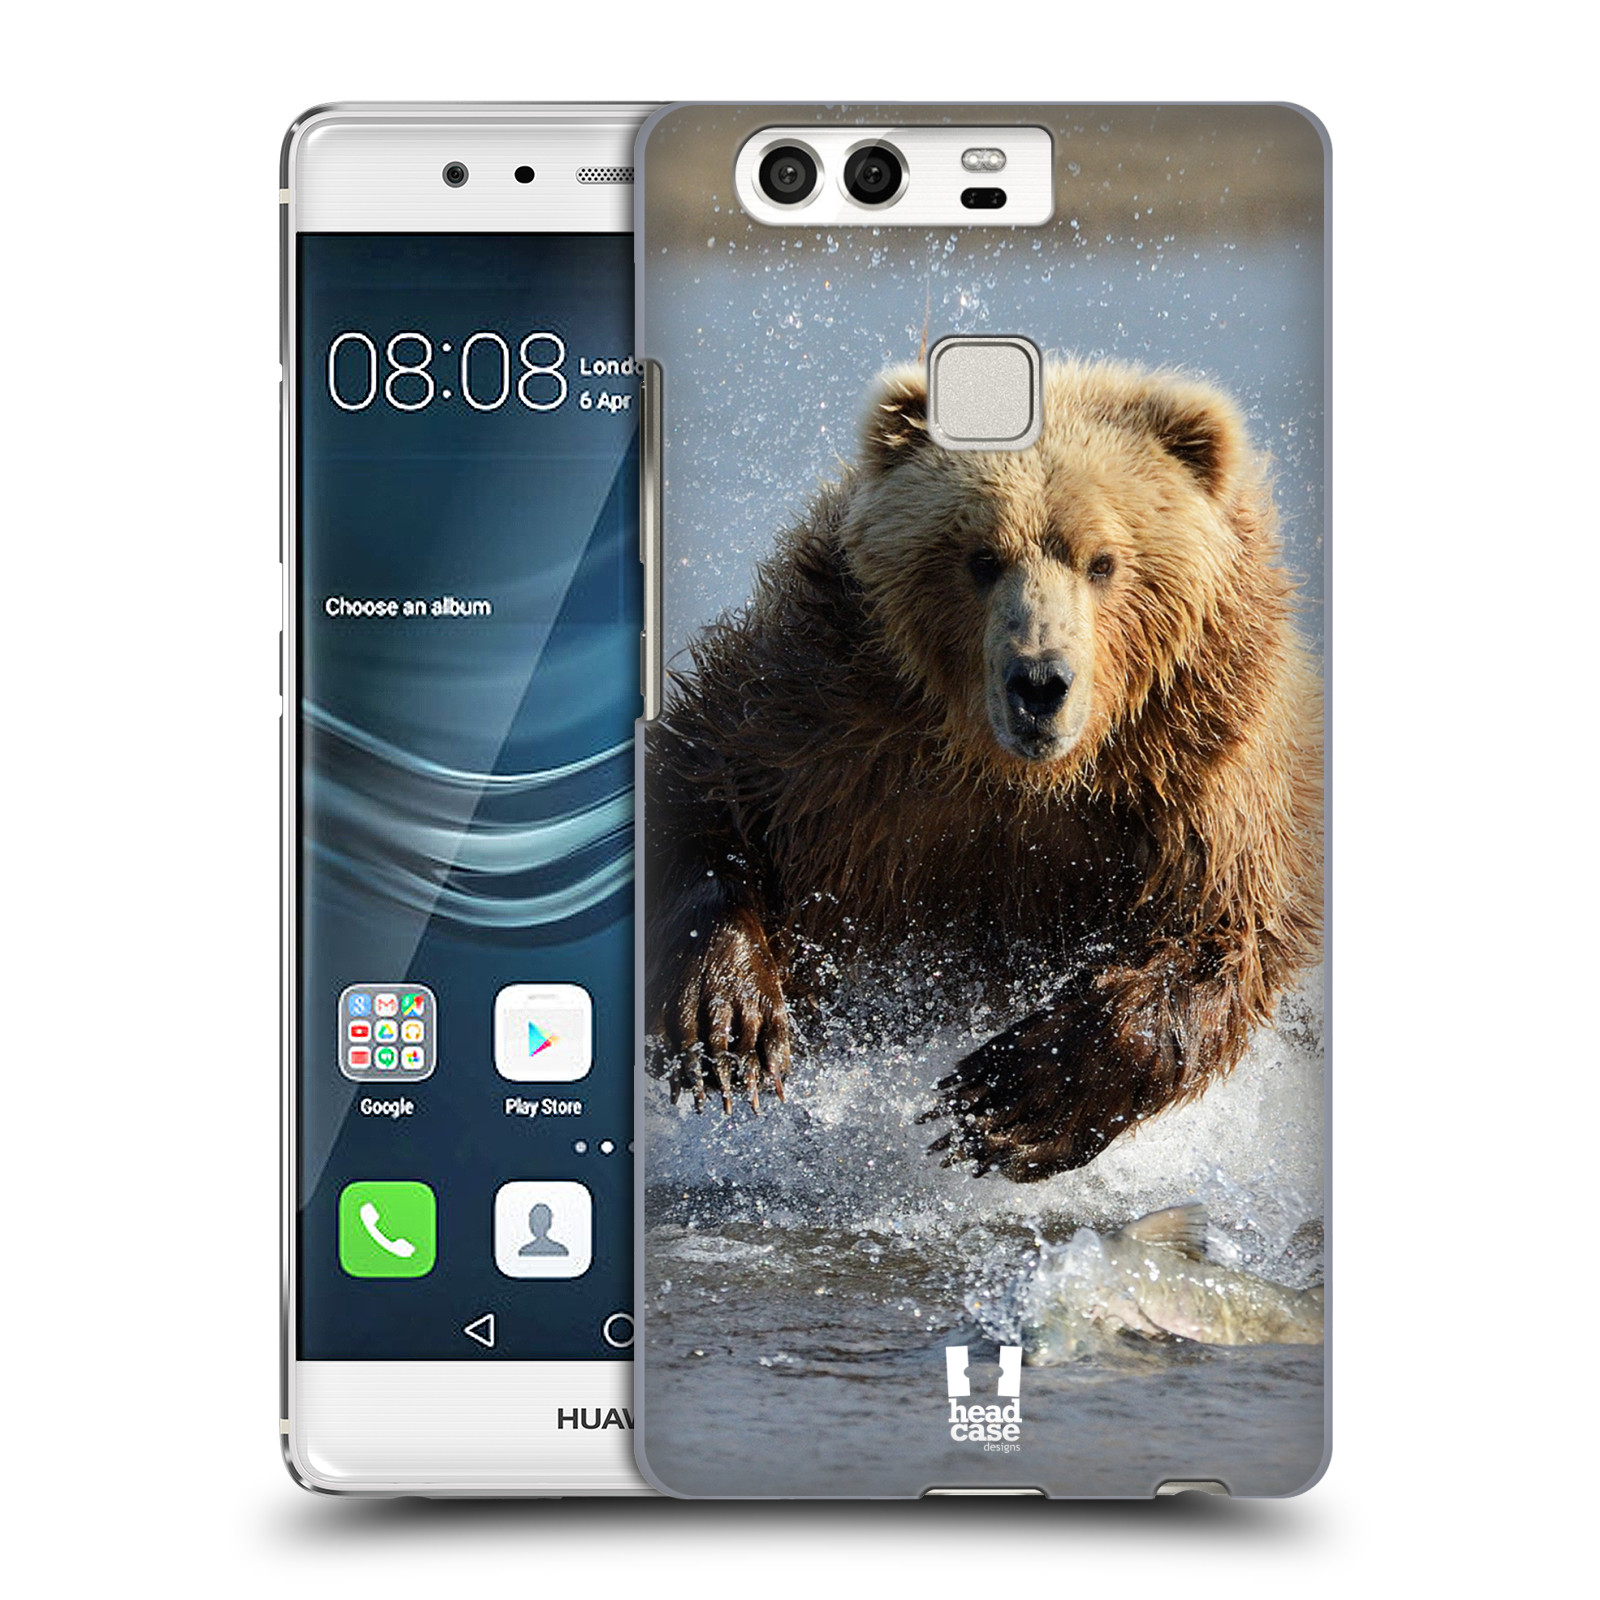 HEAD CASE plastový obal na mobil Huawei P9 / P9 DUAL SIM vzor Divočina, Divoký život a zvířata foto MEDVĚD GRIZZLY HŇEDÁ